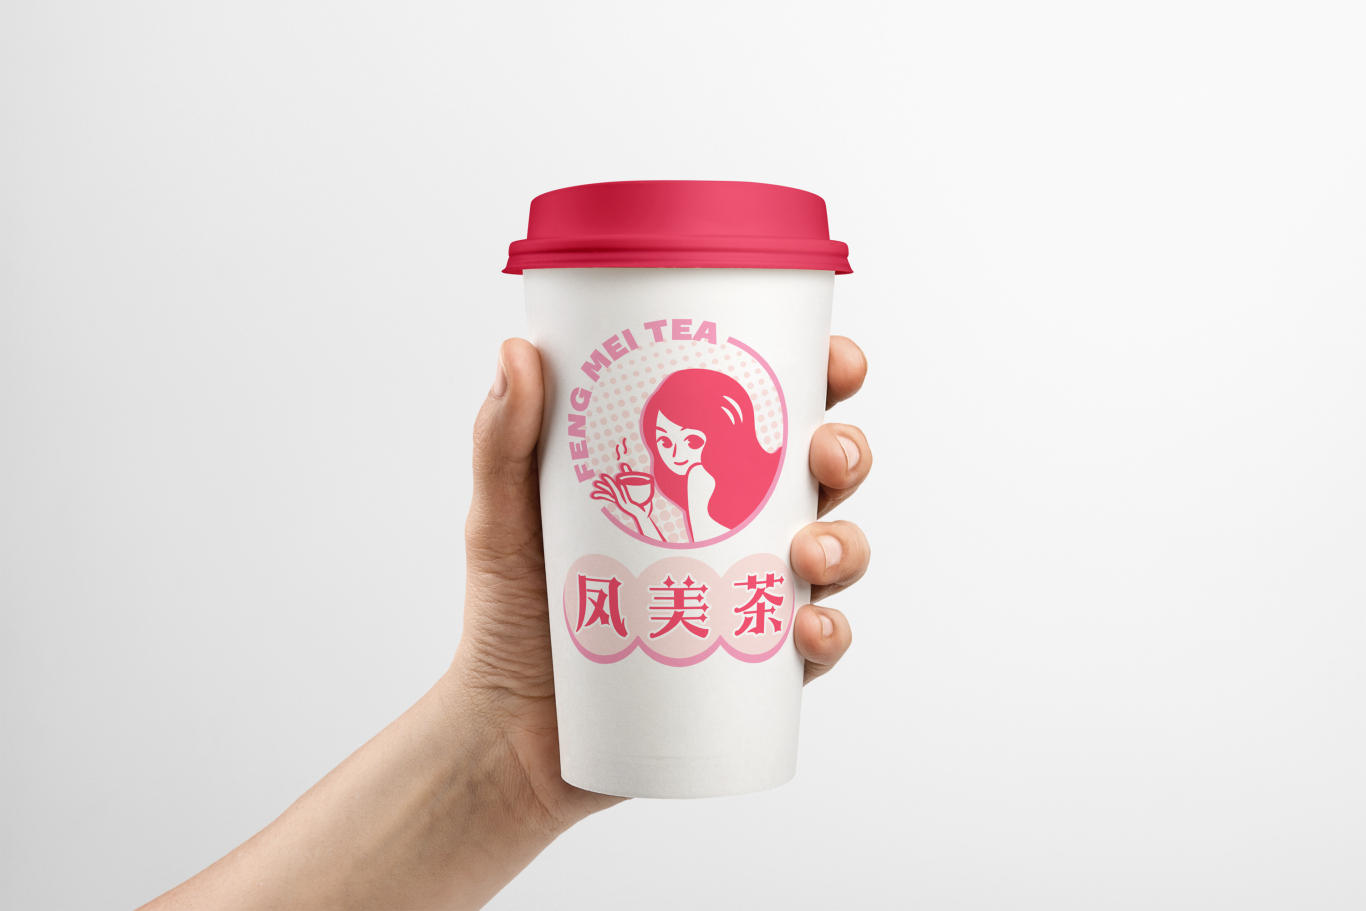 鳳美茶奶茶店卡通形象LOGO設計圖3